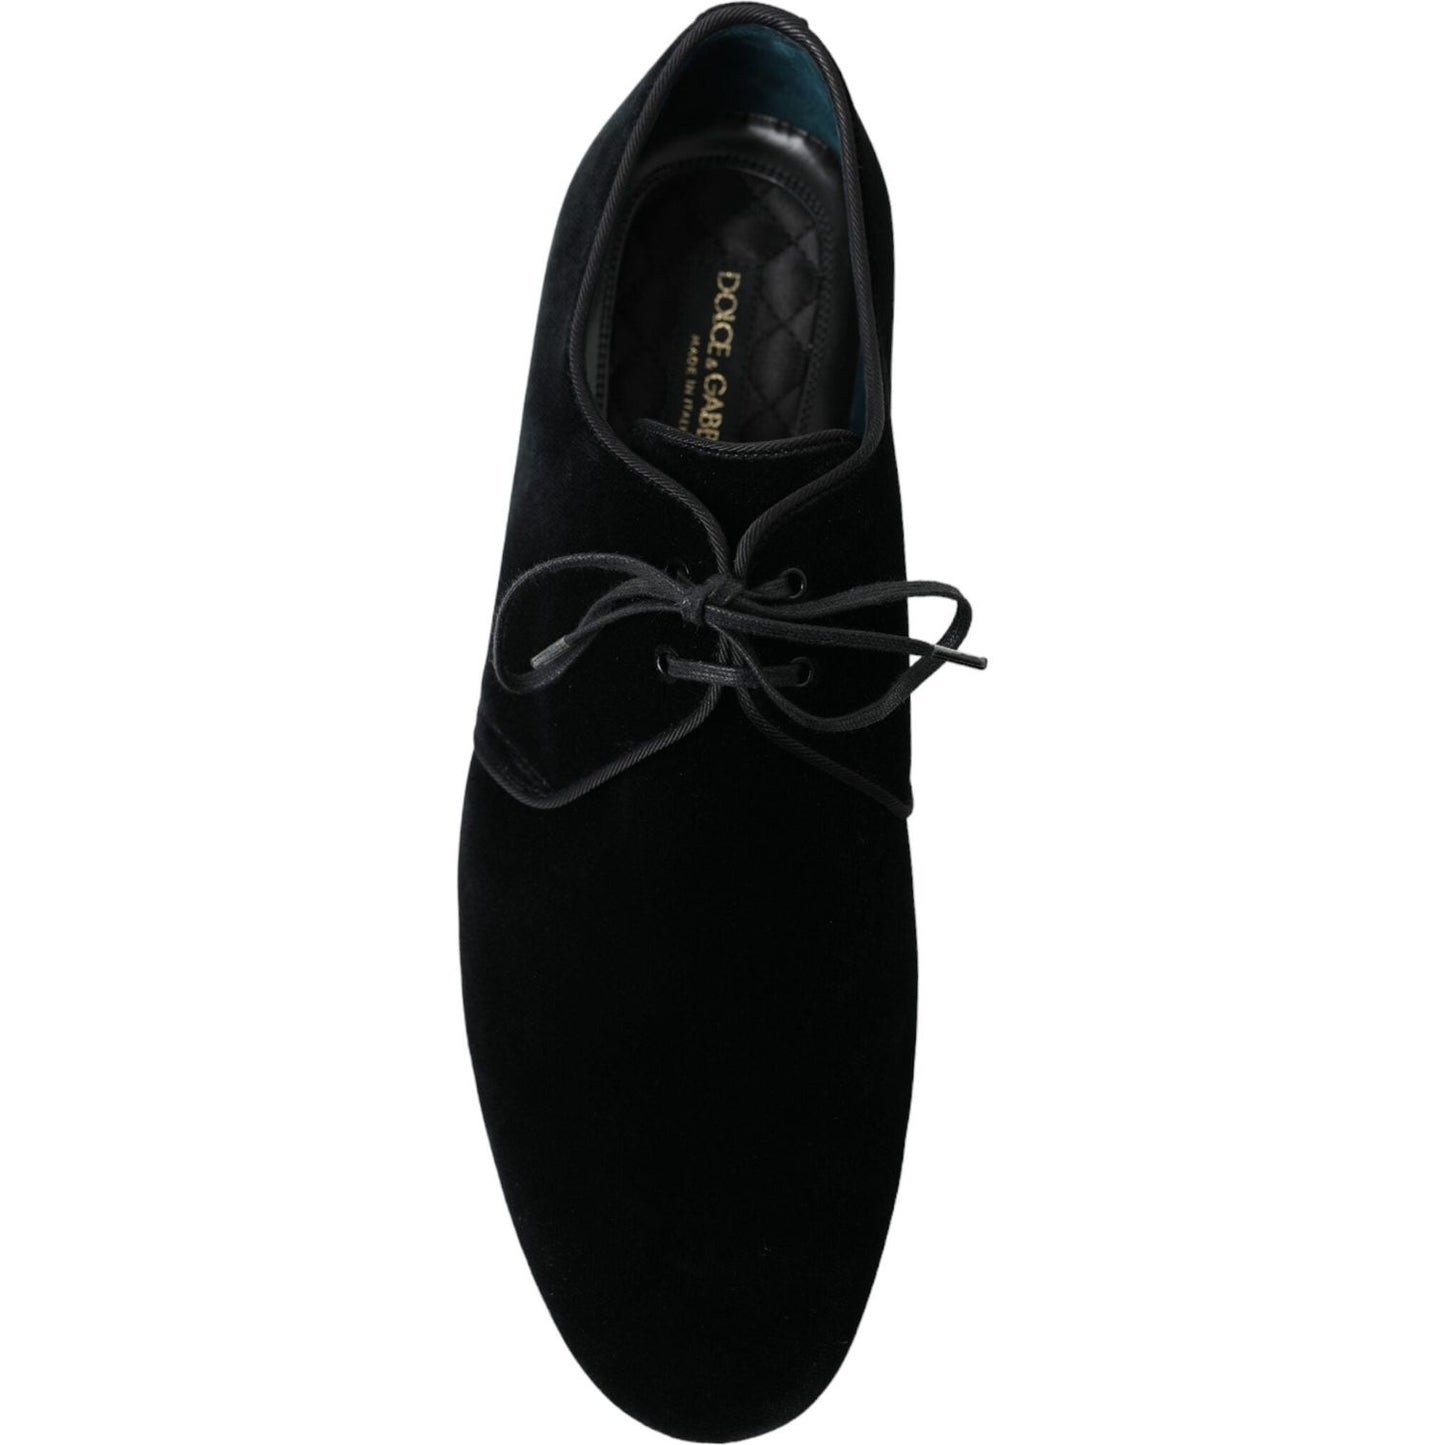 Dolce & Gabbana Elegant Black Velvet Derby Dress Shoes black-velvet-lace-up-formal-derby-dress-shoes 465A1267-bg-scaled-dcc80875-1e2.jpg